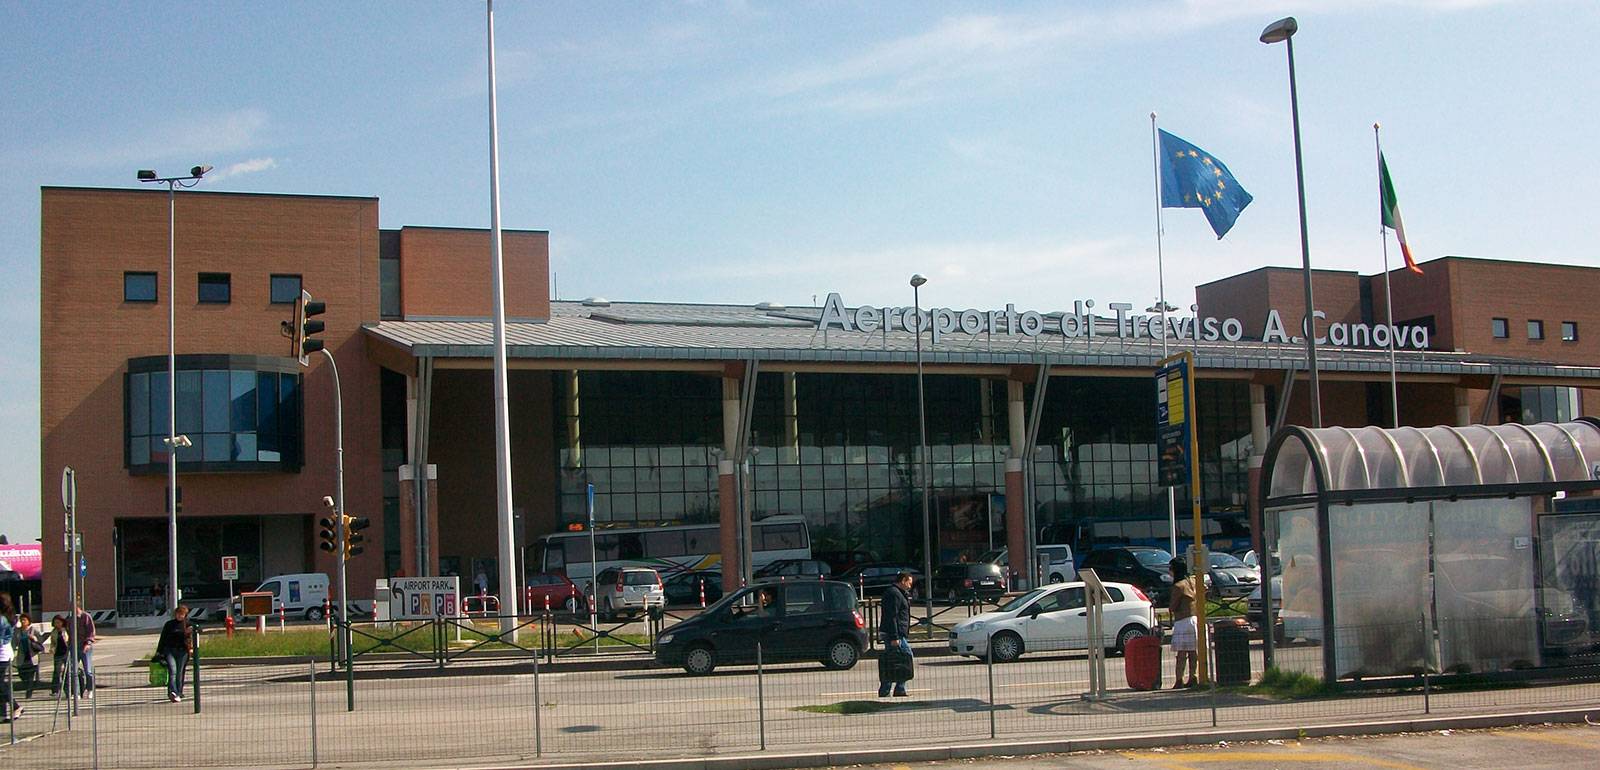 Аэропорт венеции марко поло - venice marco polo airport